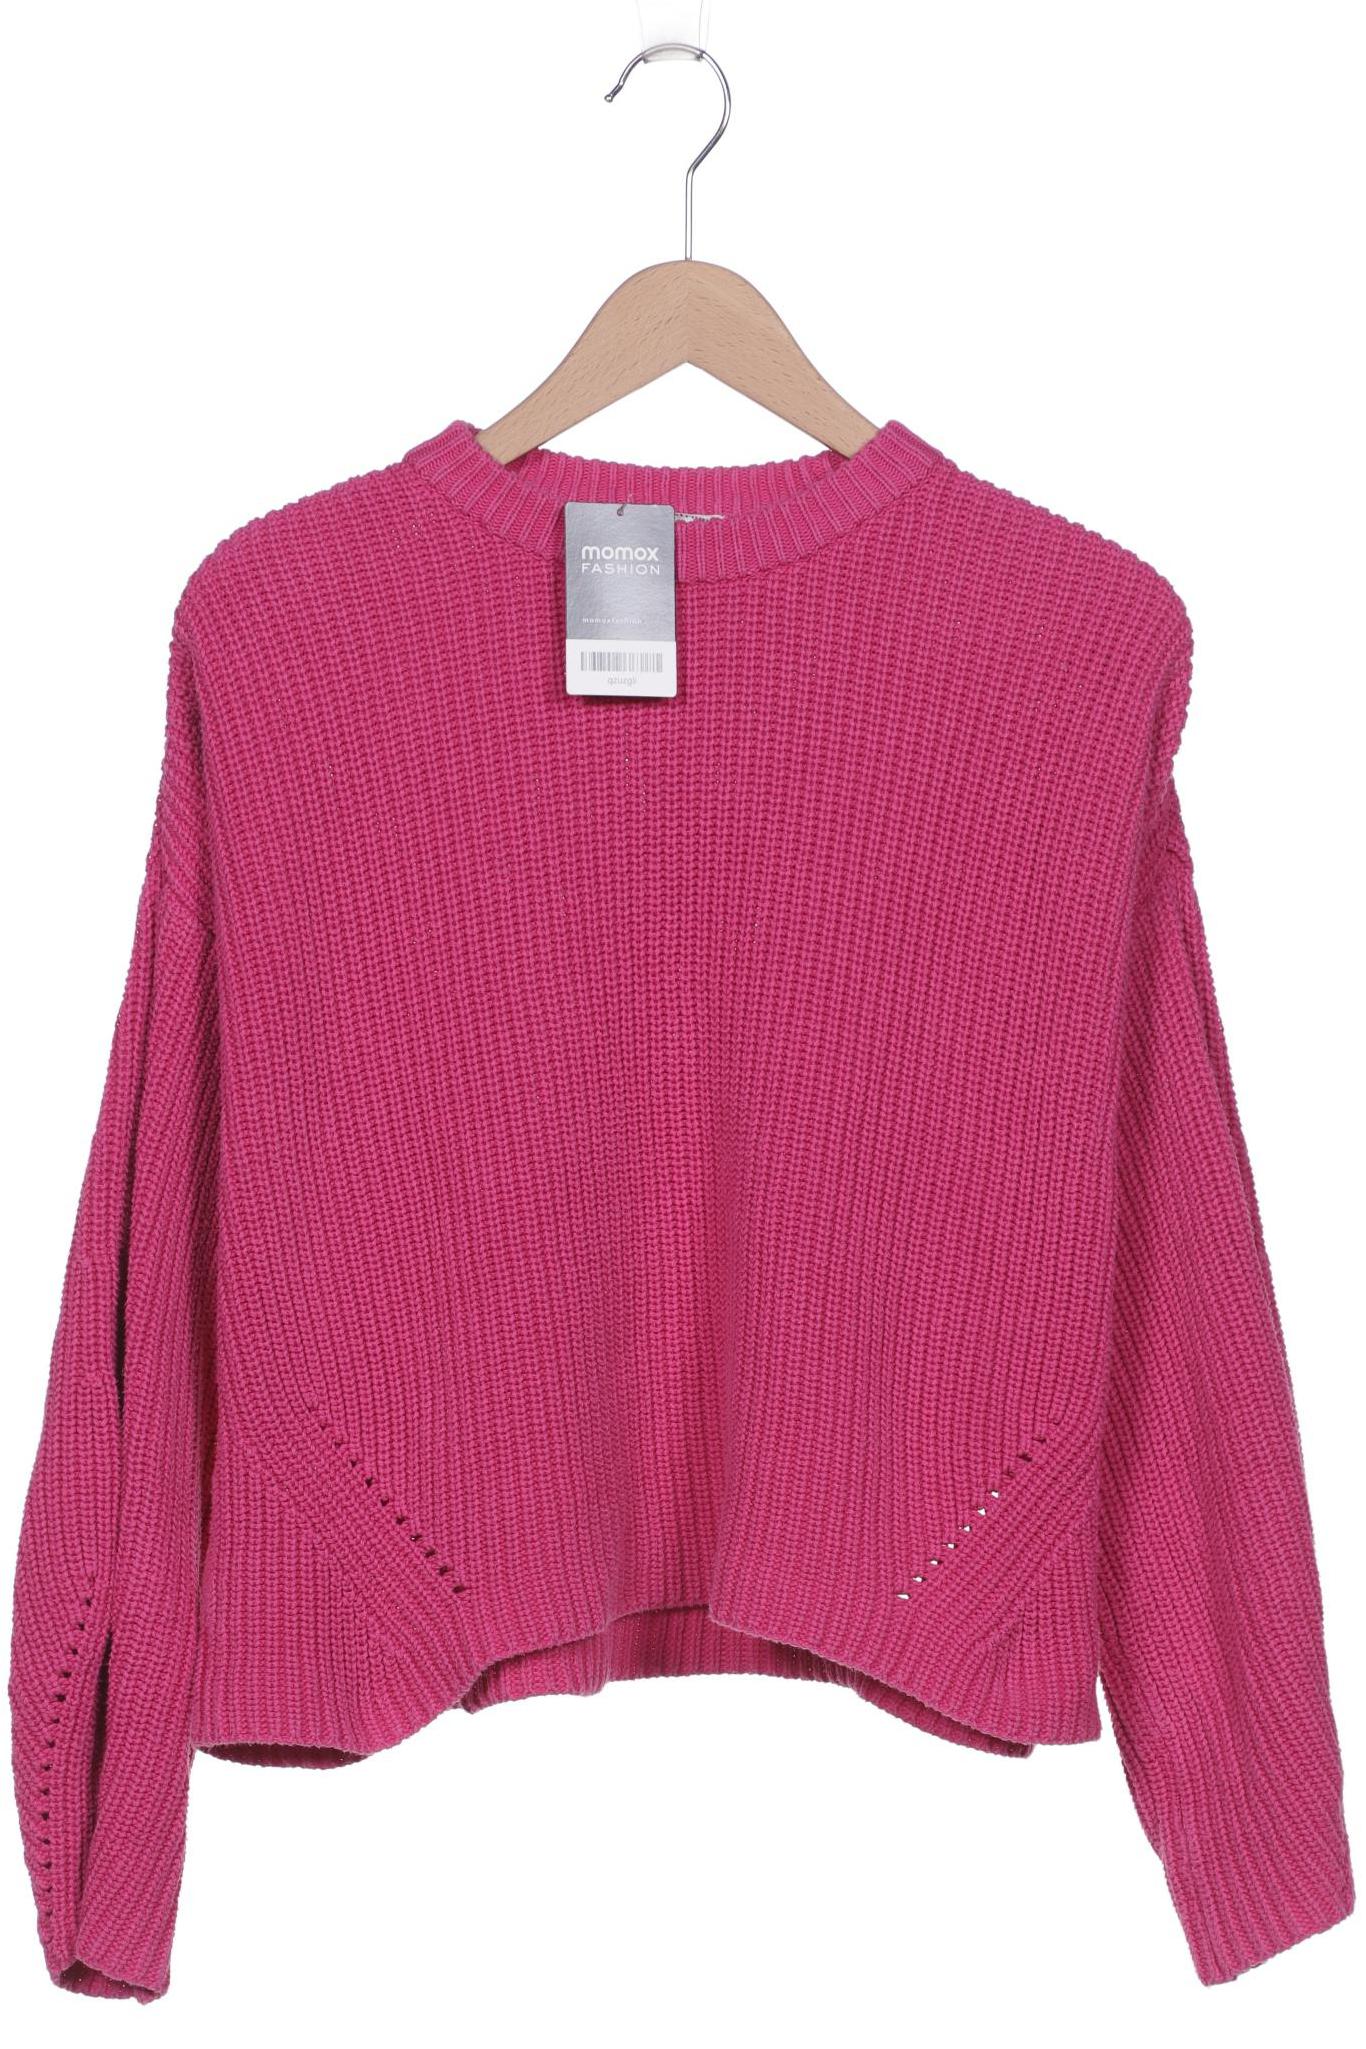 Modstroem Damen Pullover, pink, Gr. 36 von Modstroem